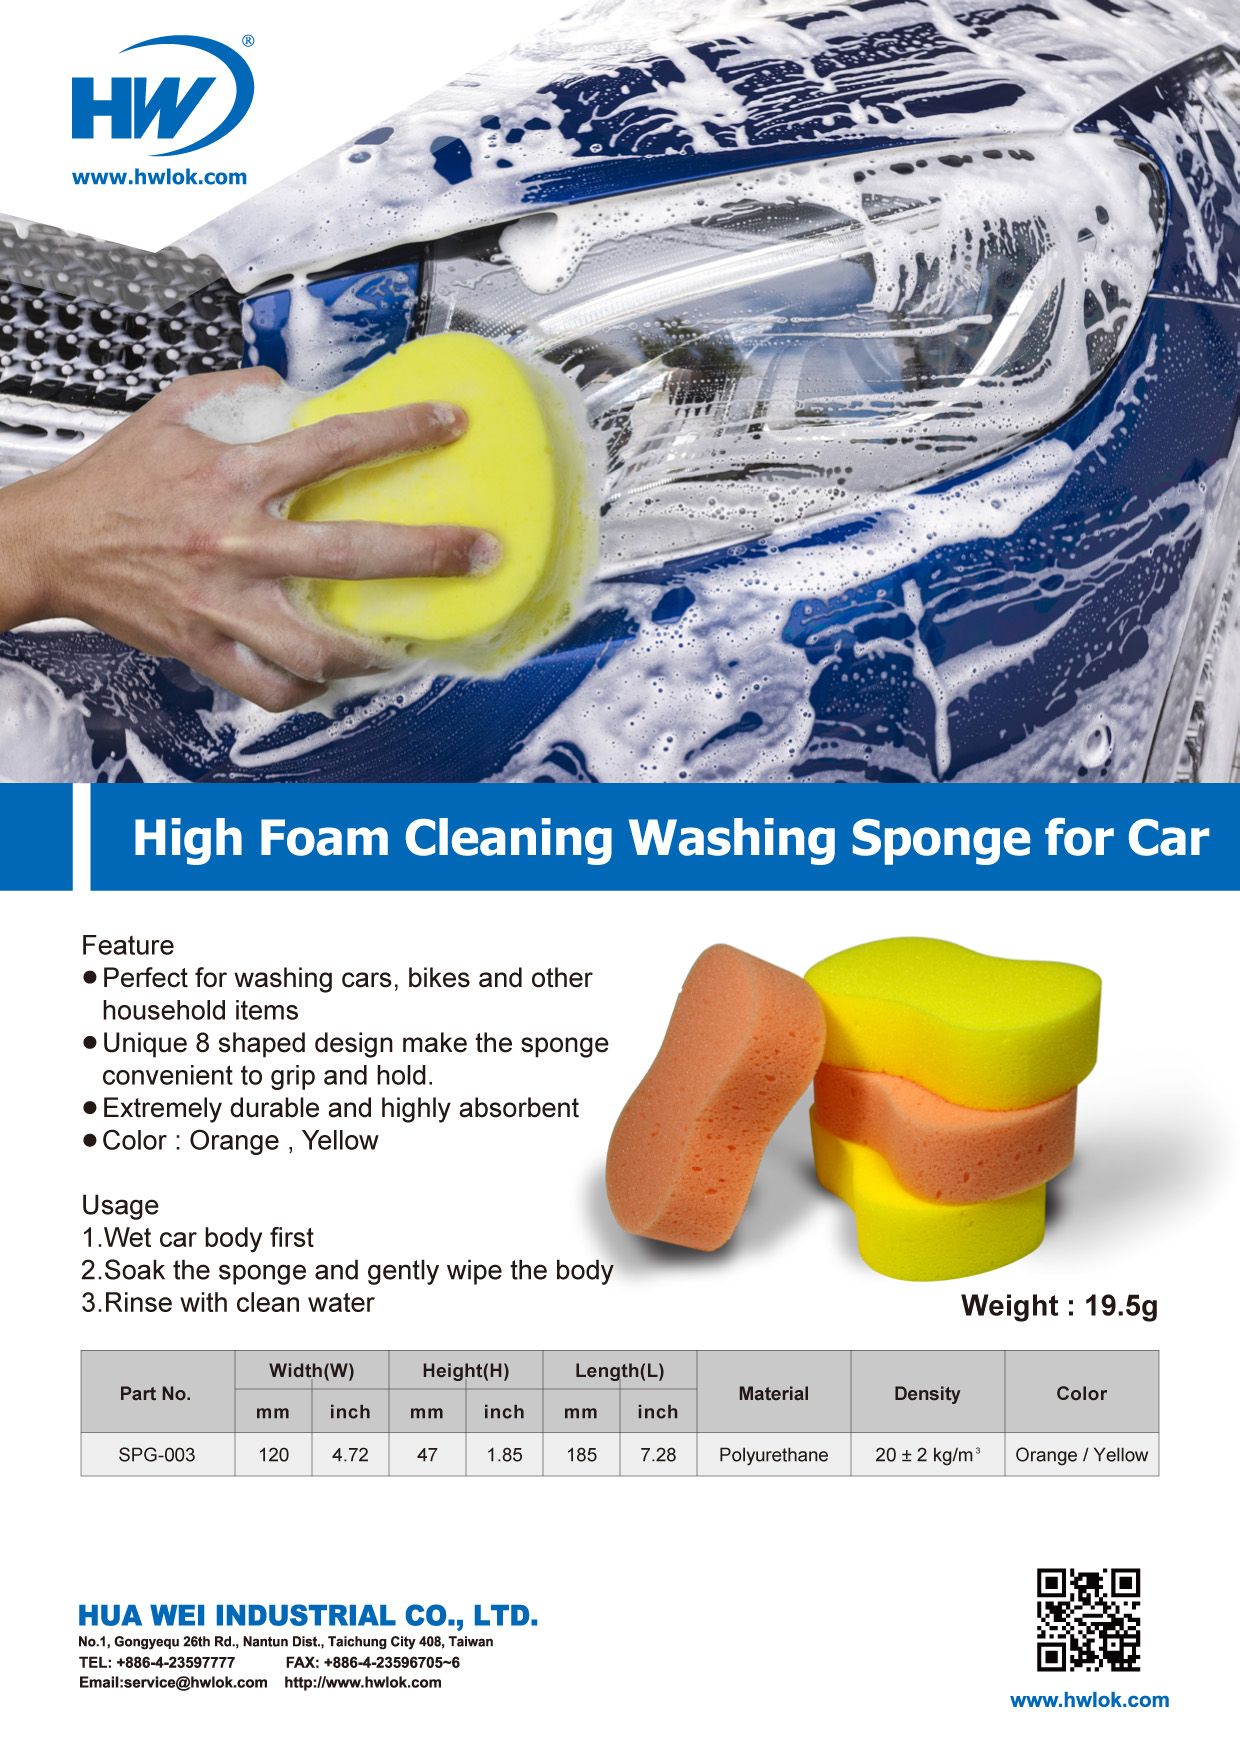 إسفنجة تنظيف عالية الرغوة لغسيل السيارات - DM